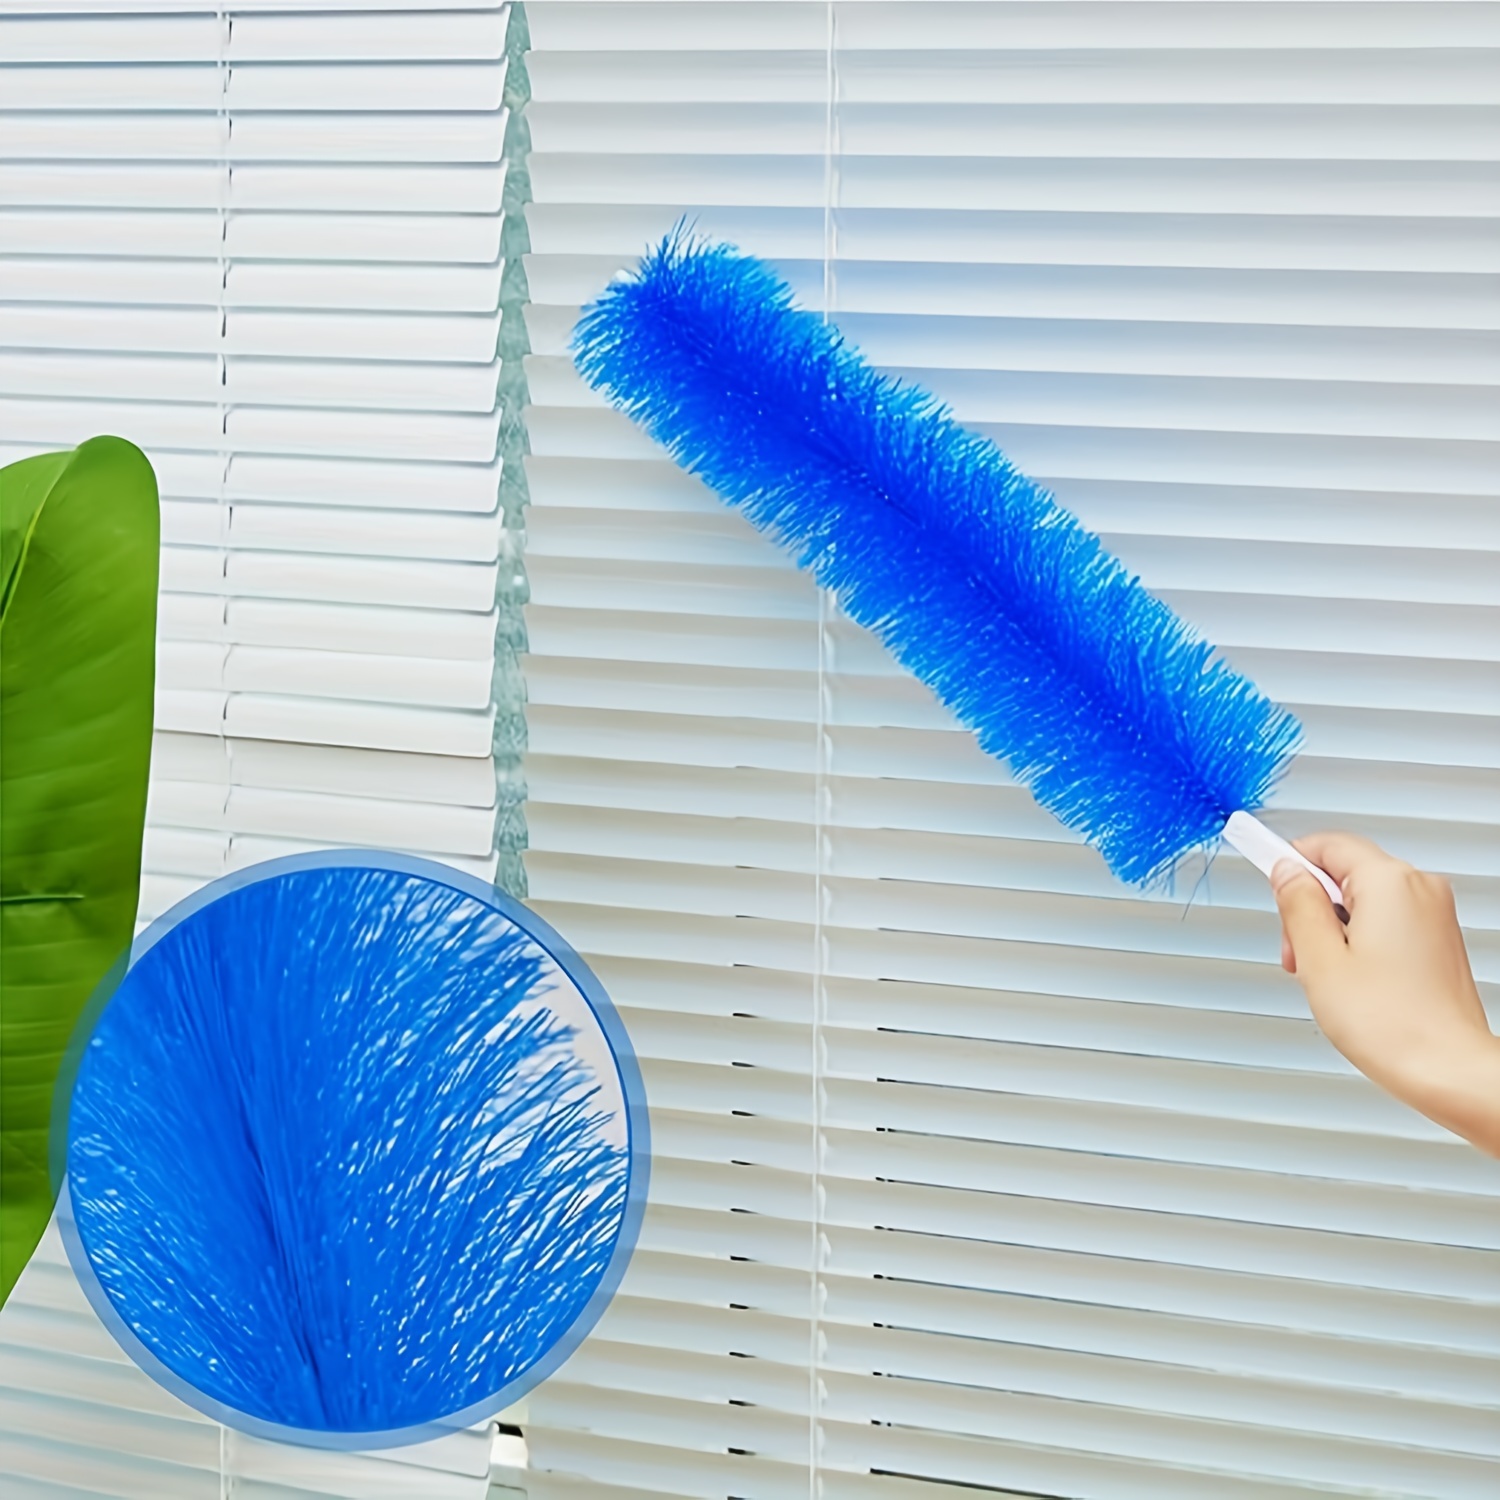 1pc Household Fan Brush Screen Window Shutter Fan Cleaning Brush